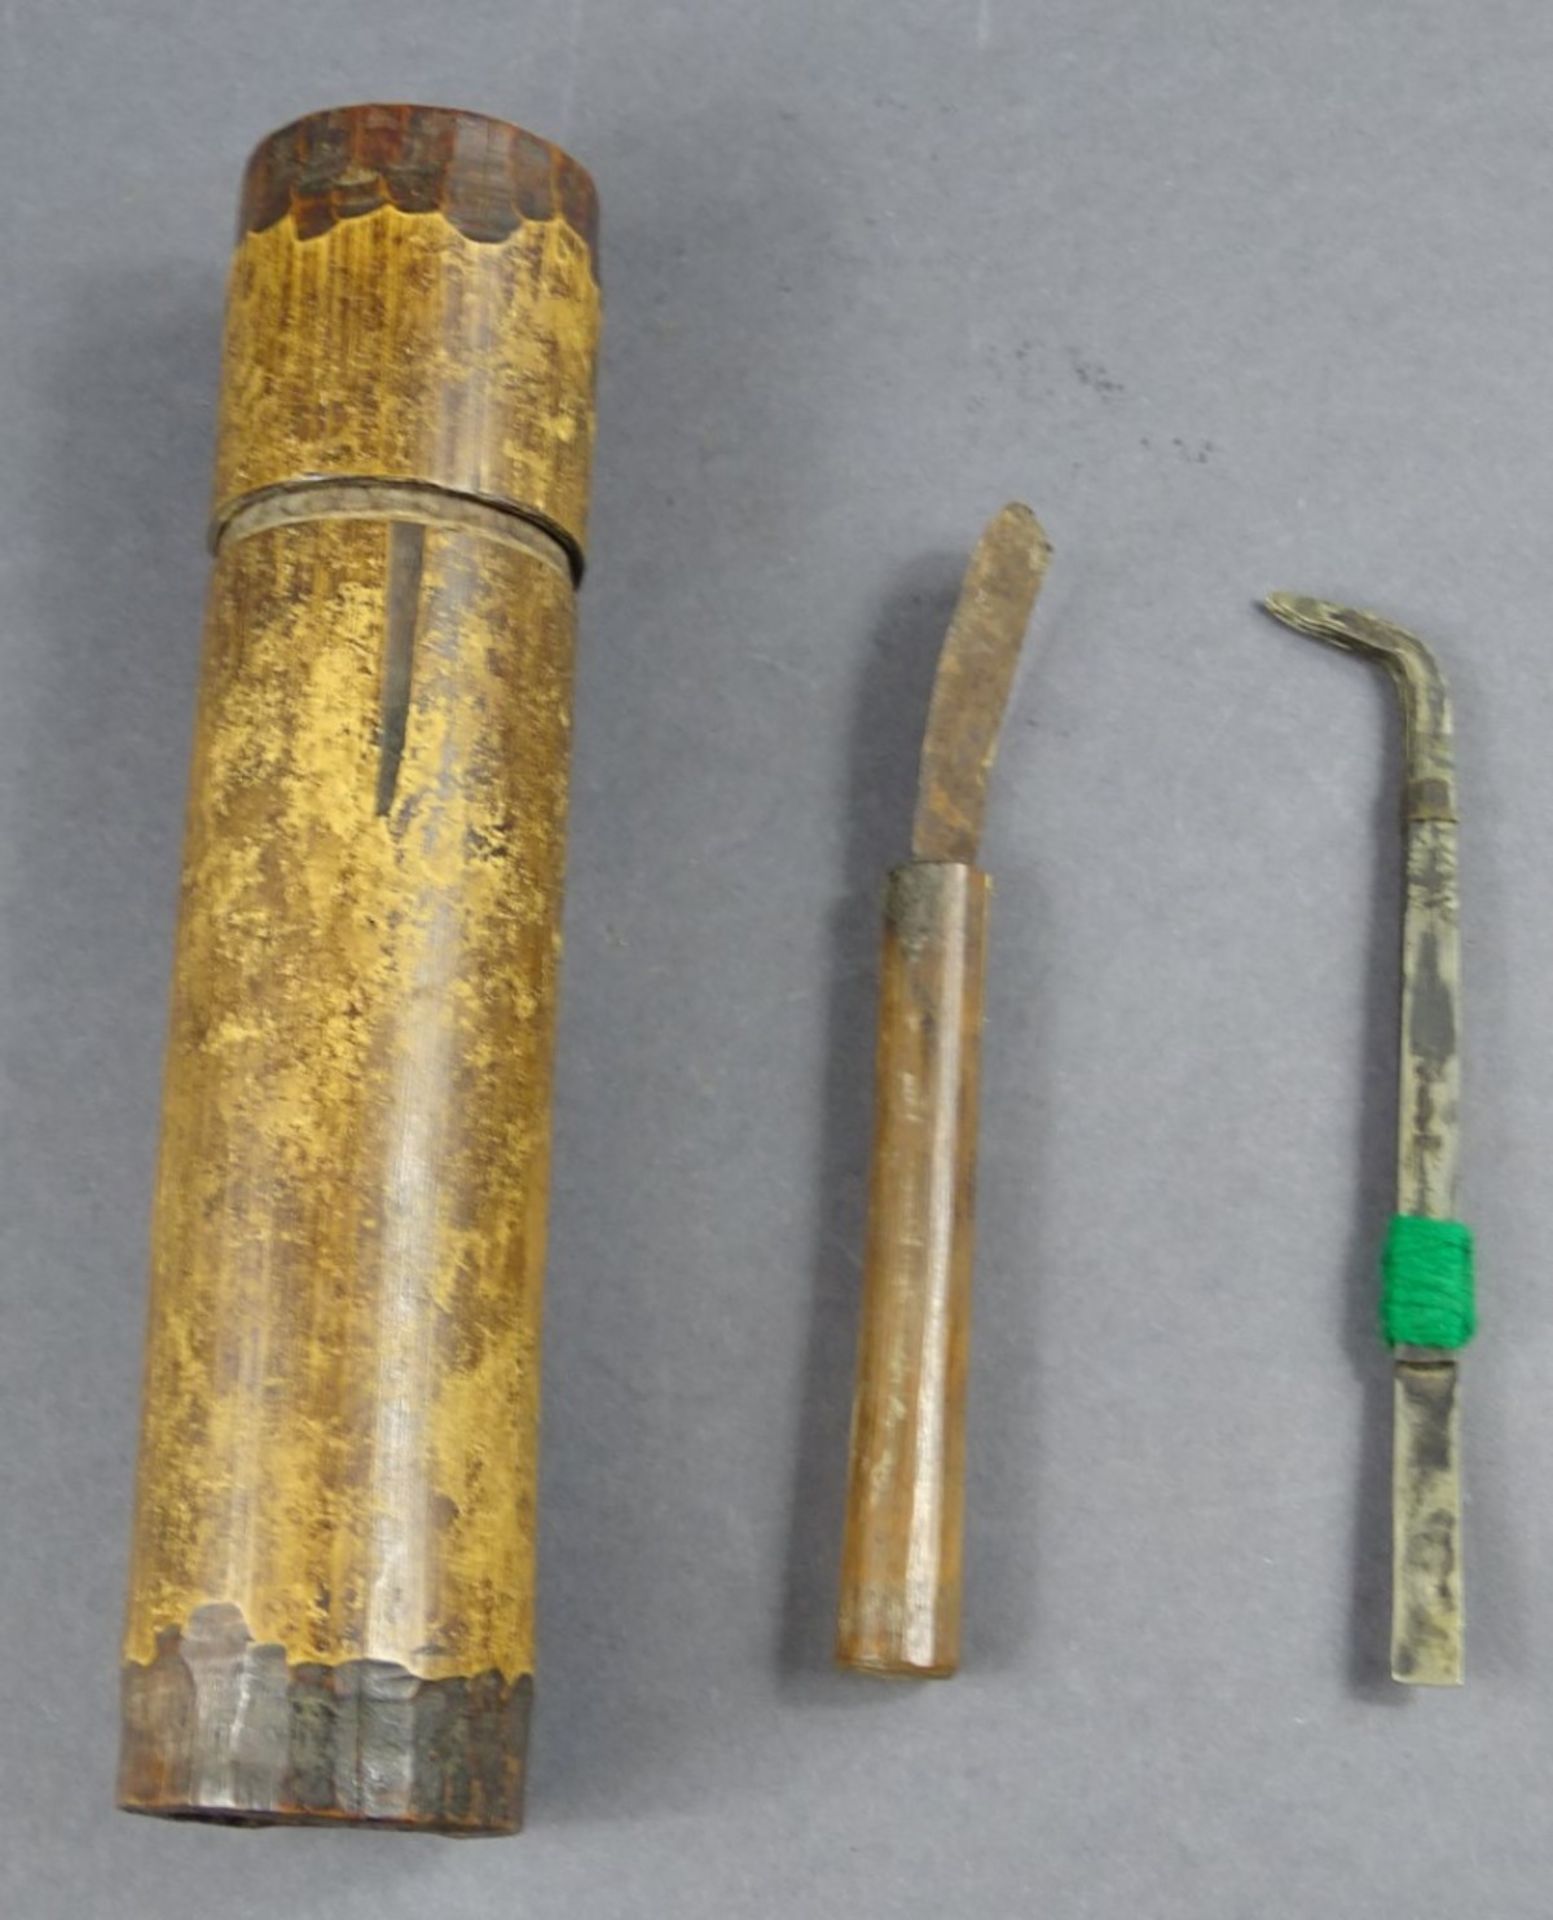 Schnitz(?)-Werkzeuge in Bambusdose, H. Dose: 21,5 cm, Klingen gut erhalten, Schaber(?) rostig